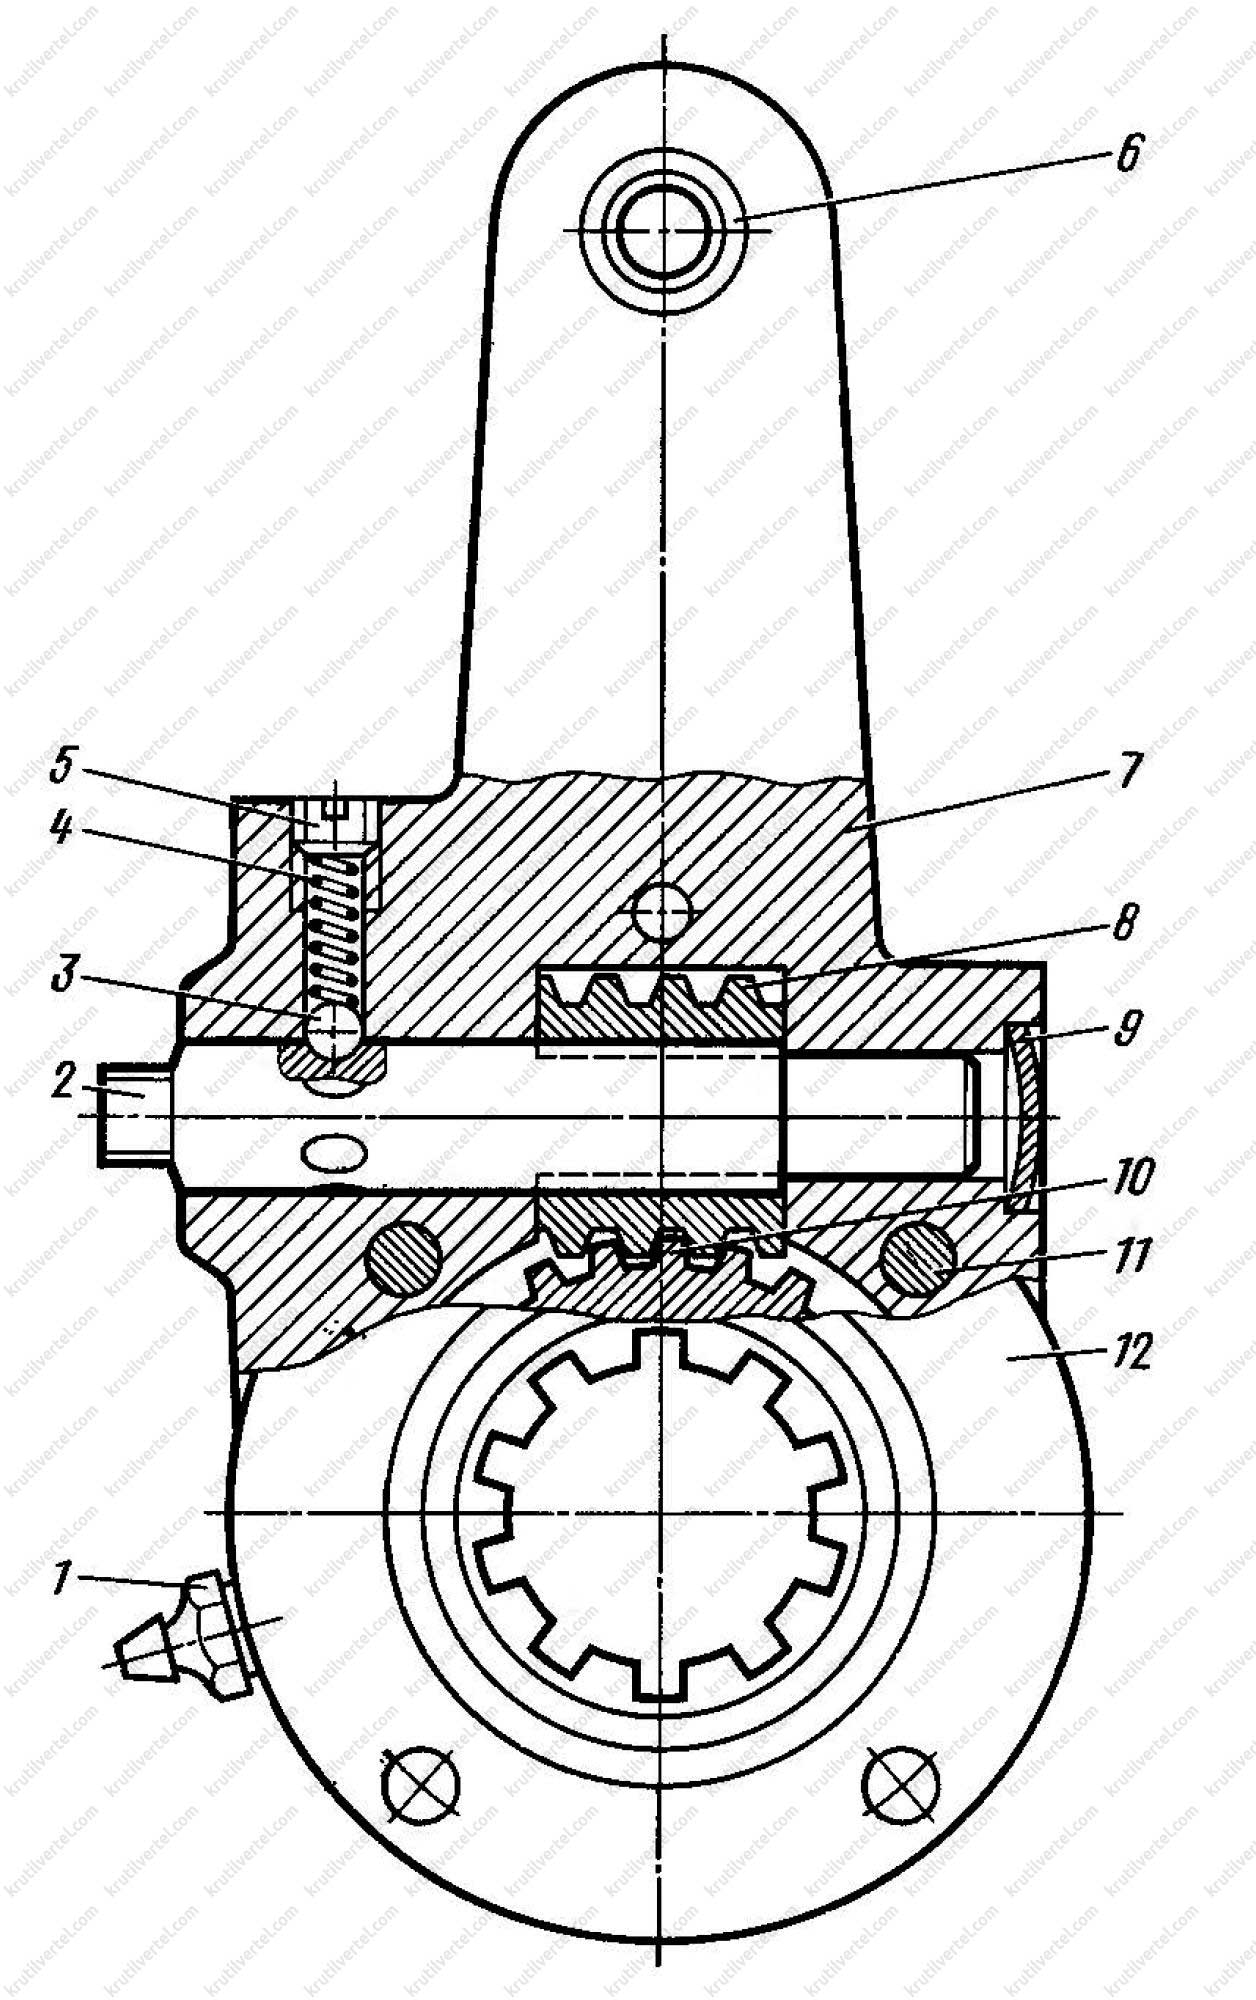 Схема пневмопривода тормозной системы автомобилей КАМАЗ моделей 55111, 65115, работающих с прицепом